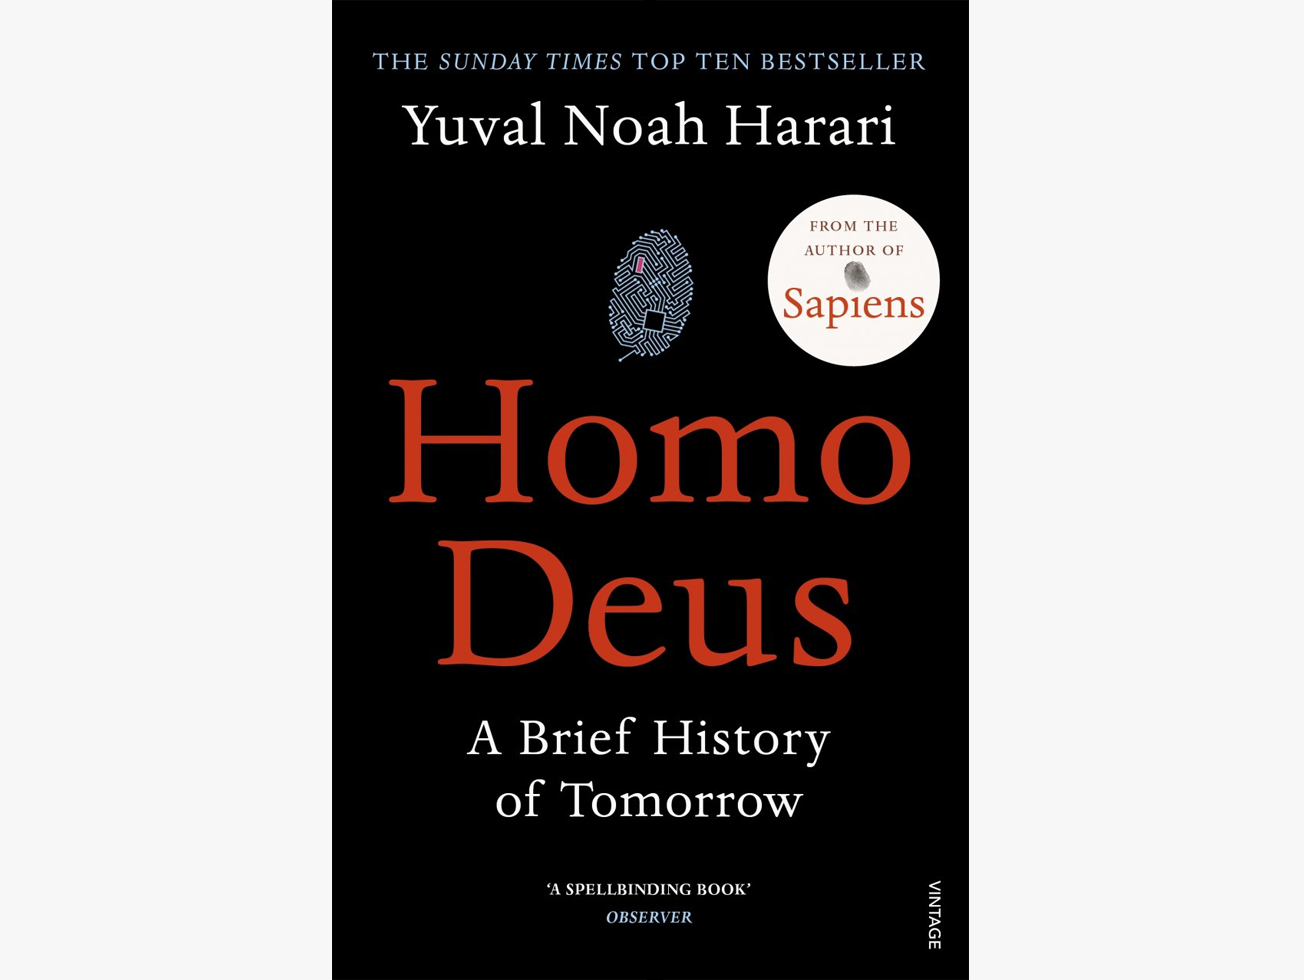 รีวิวและสรุปหนังสือ Homo Deus ของอาจารย์ yuval noah harari